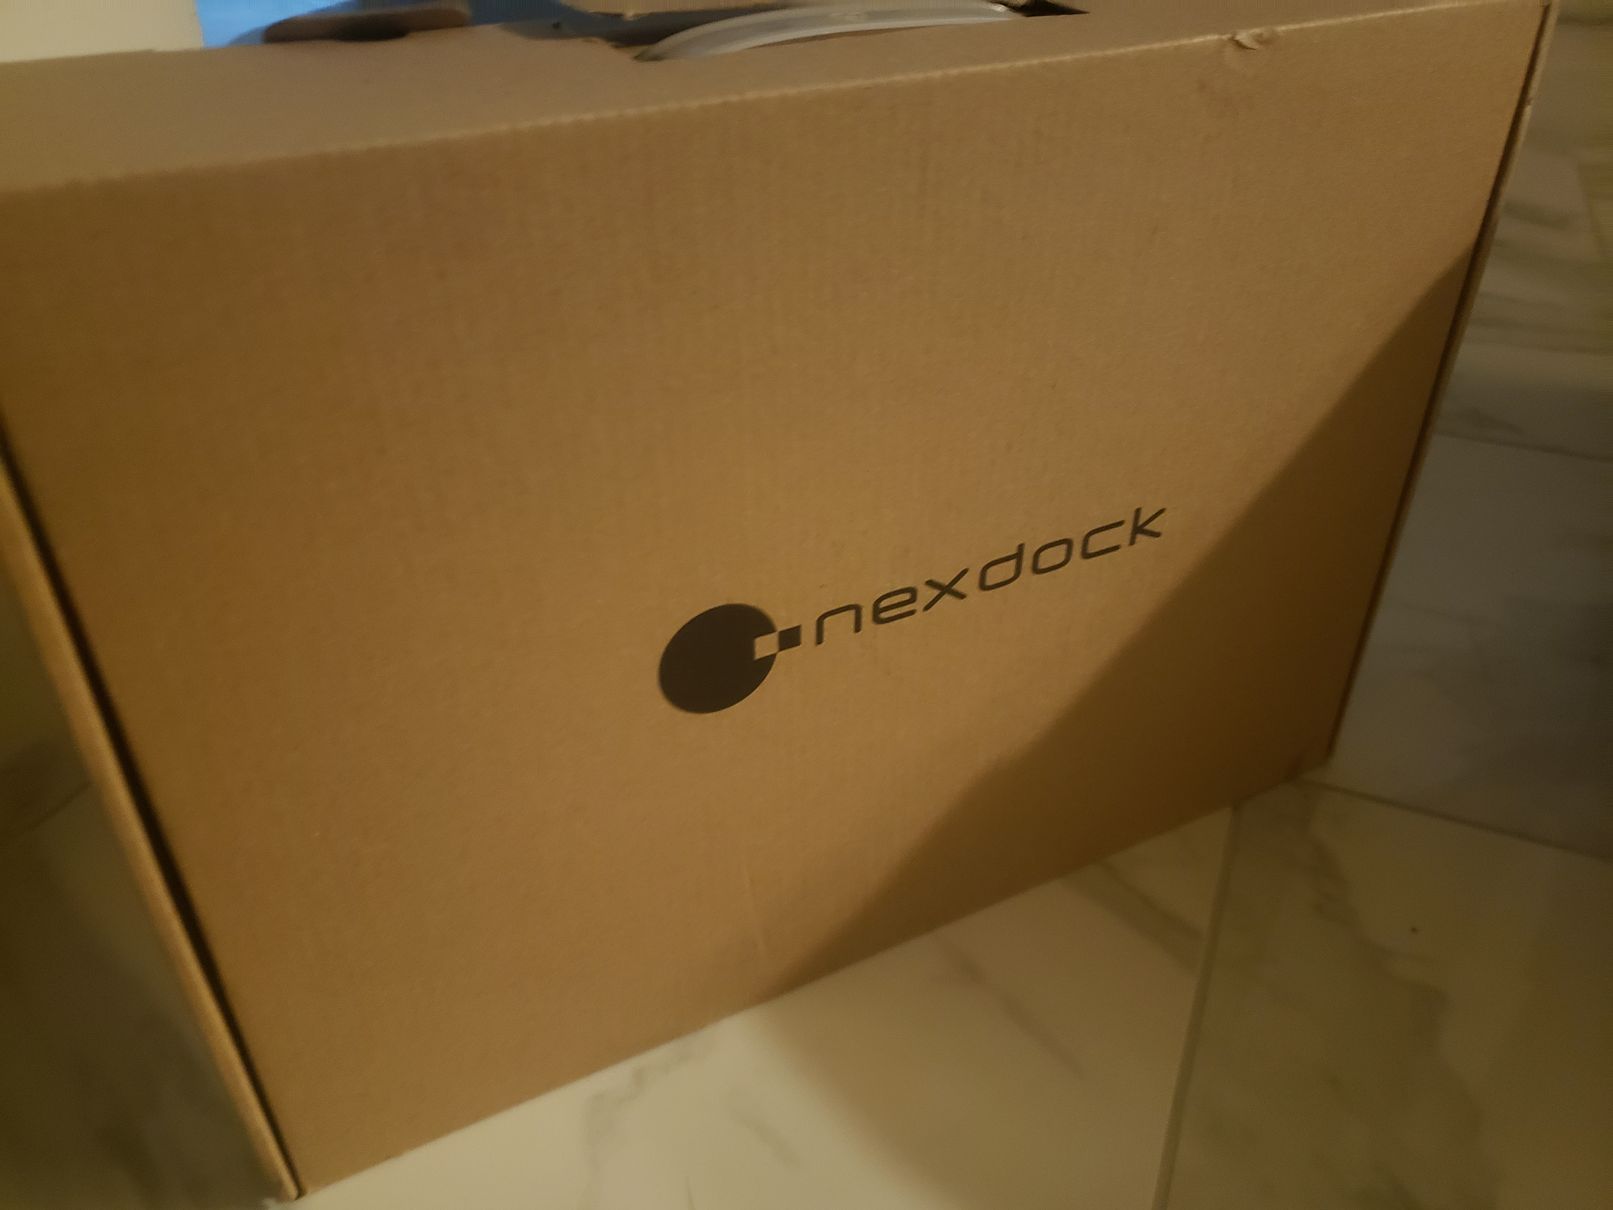 Nexdock Shipping box.jpg